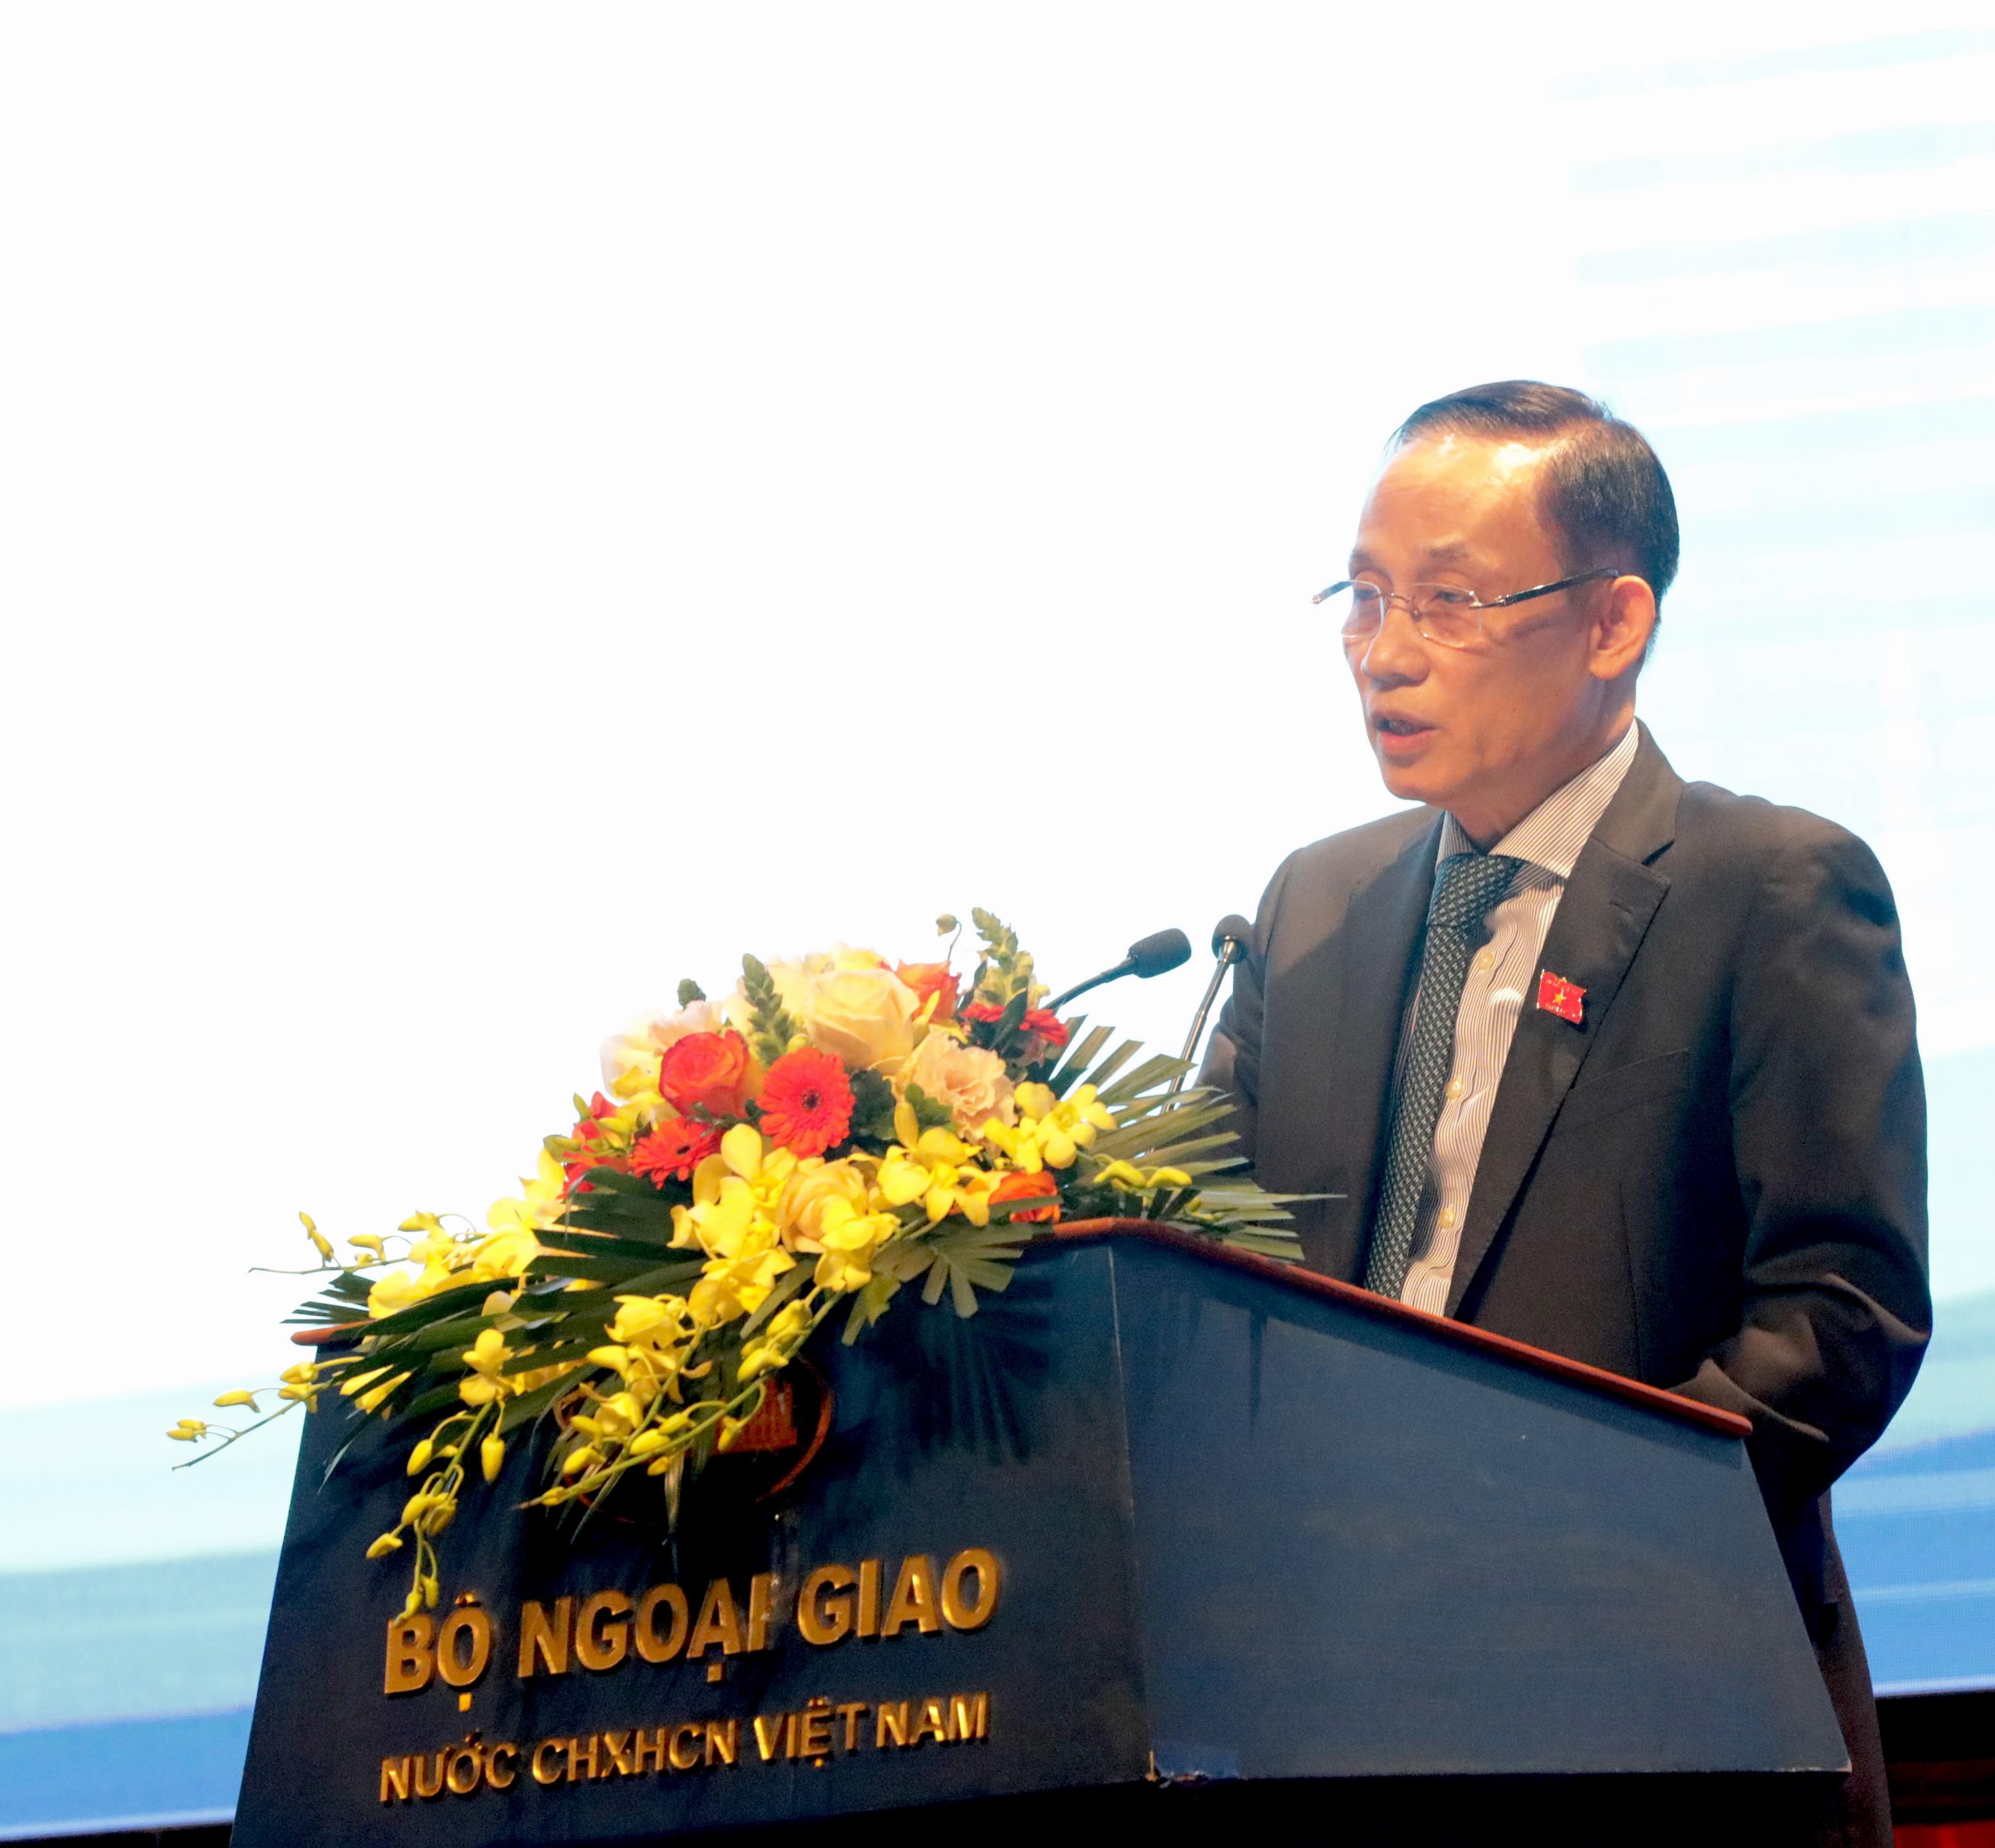 Đồng chí Lê Hoài Trung, Bí thư Trung ương Đảng, Trưởng ban Đối ngoại Trung ương phát biểu tại buổi ra mắt cuốn sách. (Ảnh: TA)